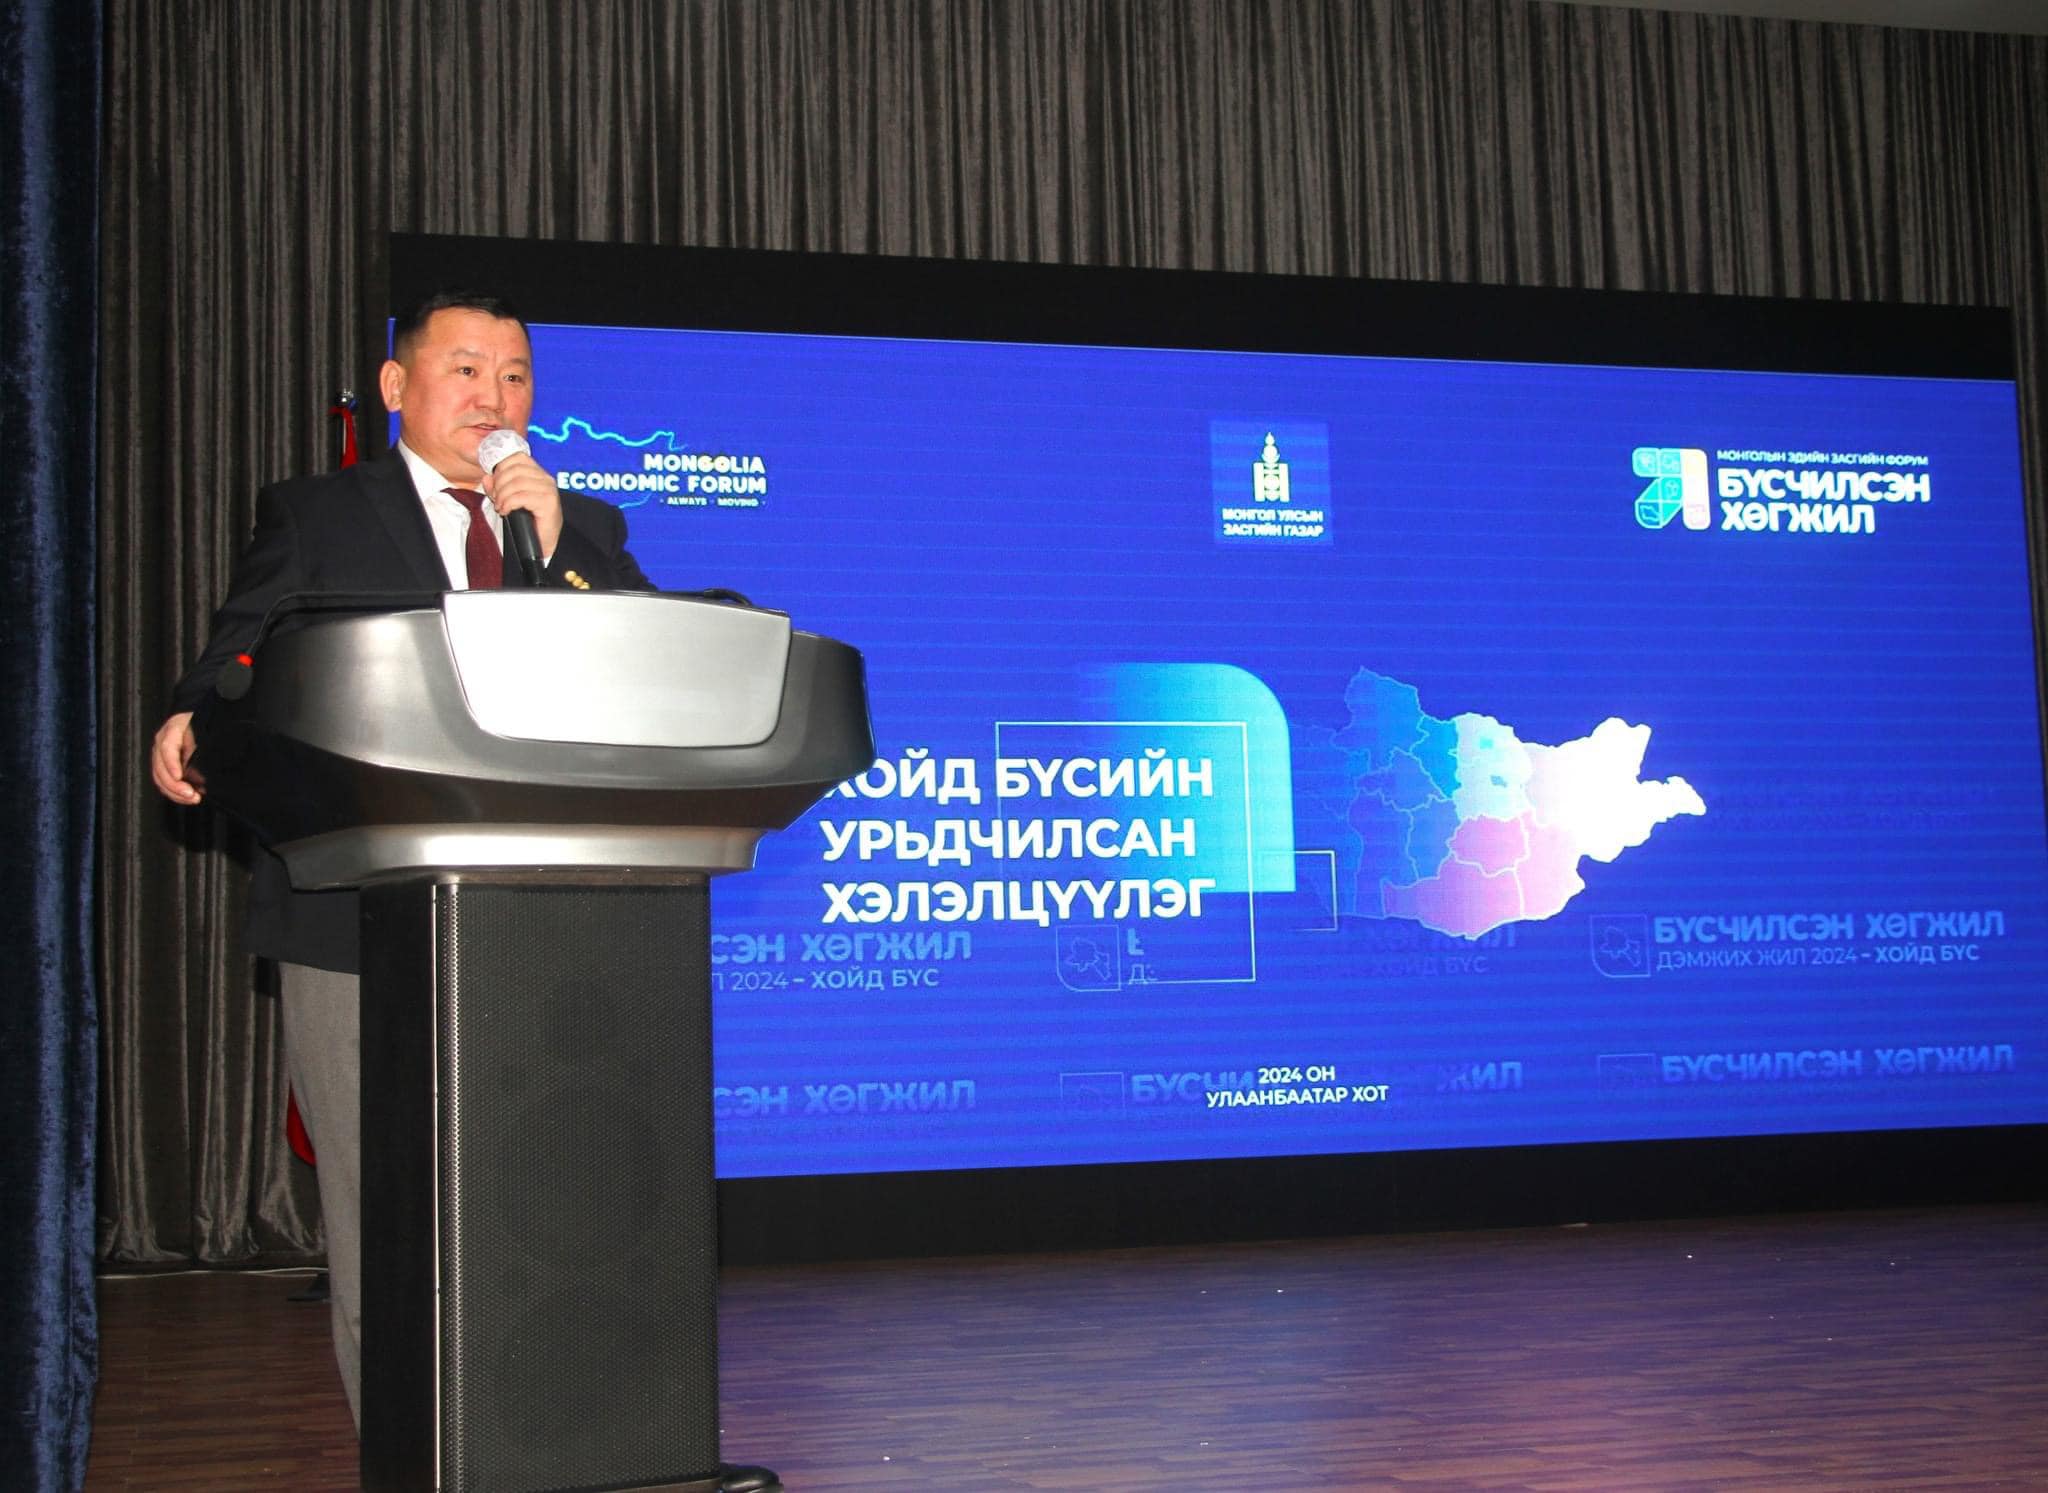 Бүсчилсэн хөгжил бол Монгол Улсын тогтвортой хөгжлийн шинэ гарц юм